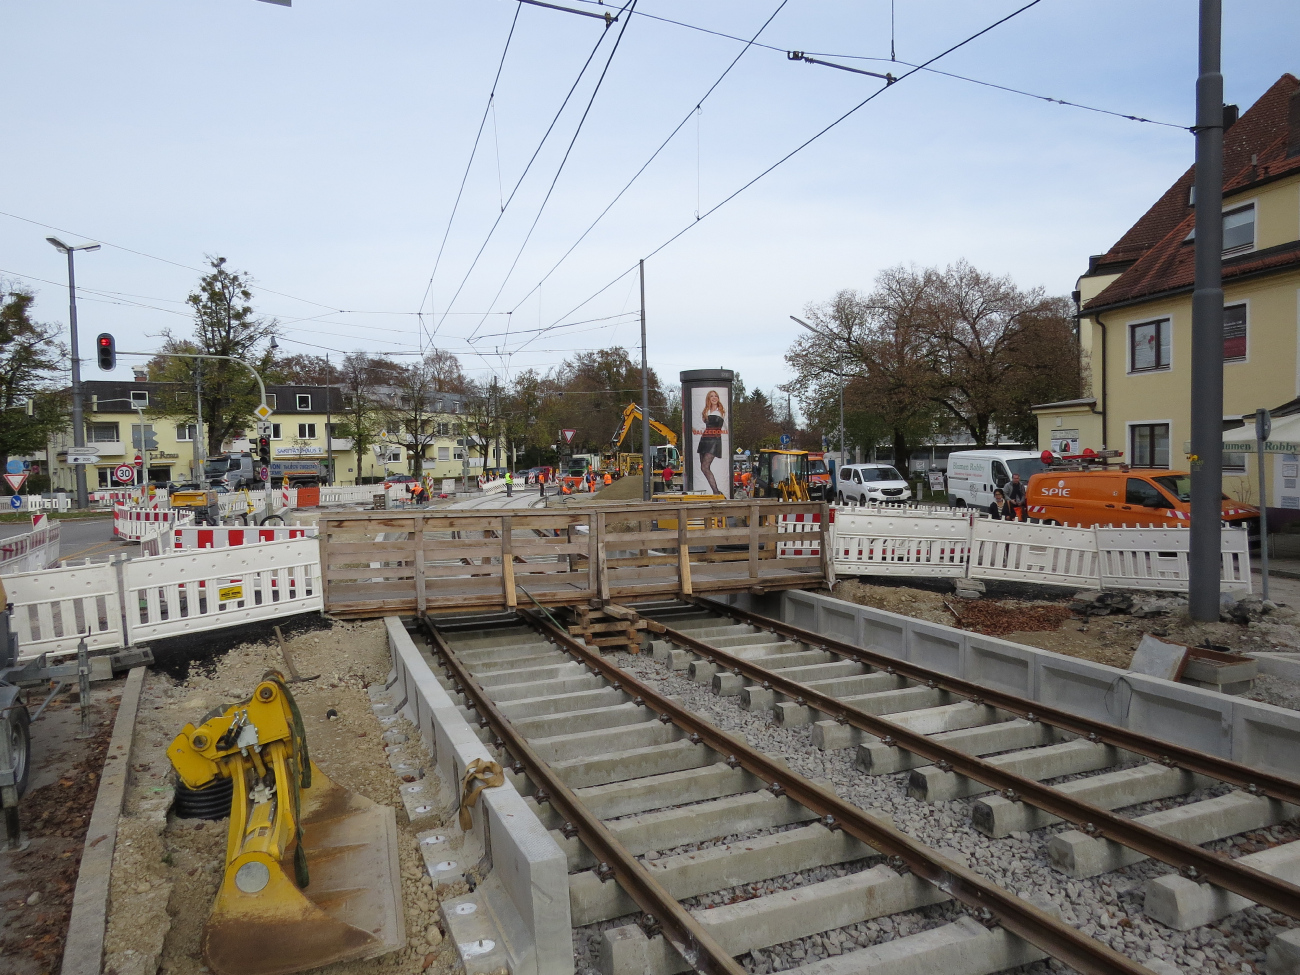 Мюнхен — Трамвайные линии и инфраструктура